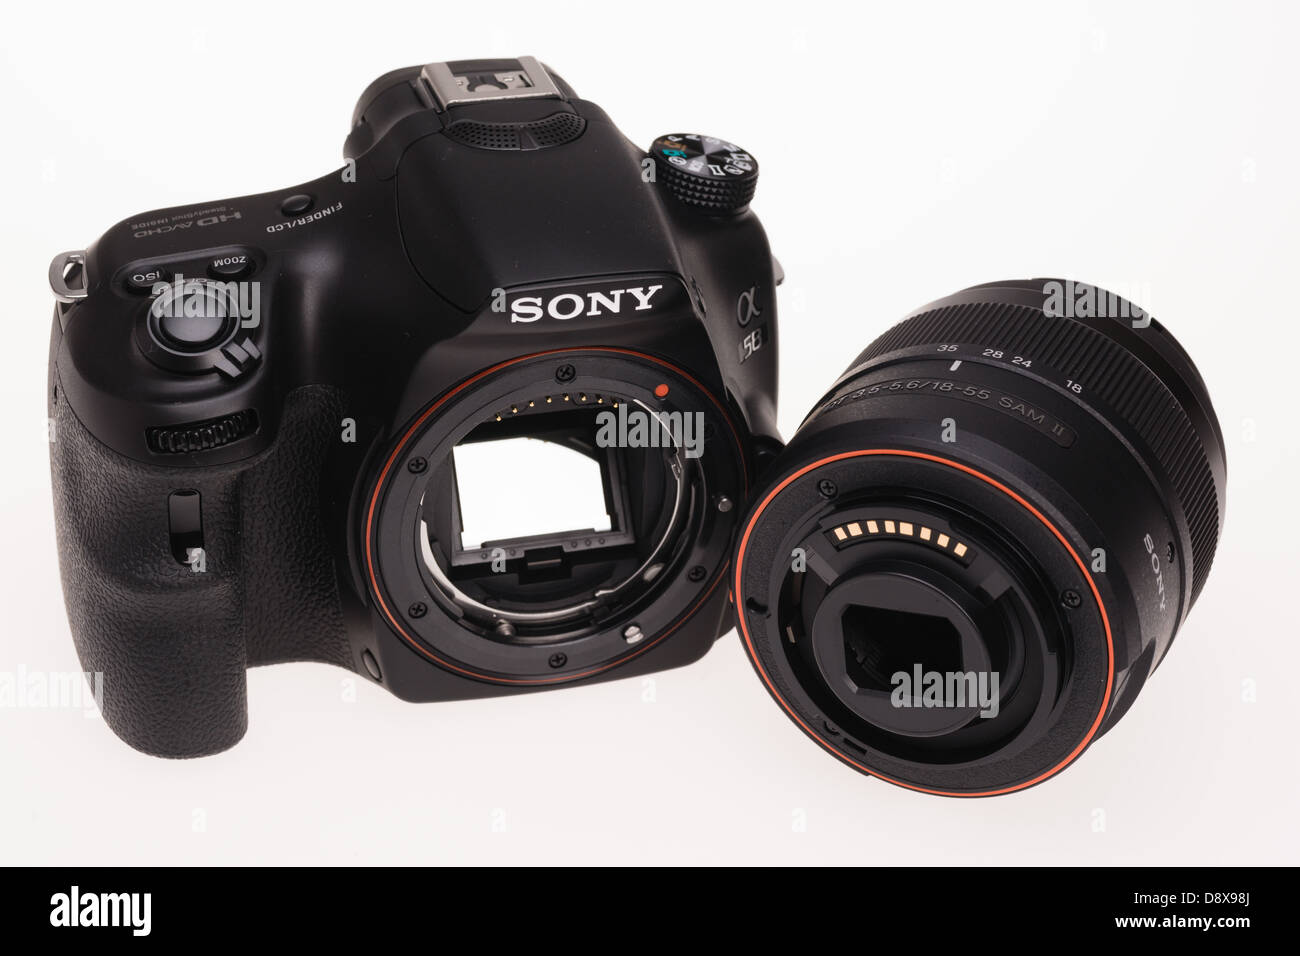 Sony Alpha 58 sistema digital camera - cuerpo de plástico y lentes monturas de bayoneta Fotografía de stock Alamy